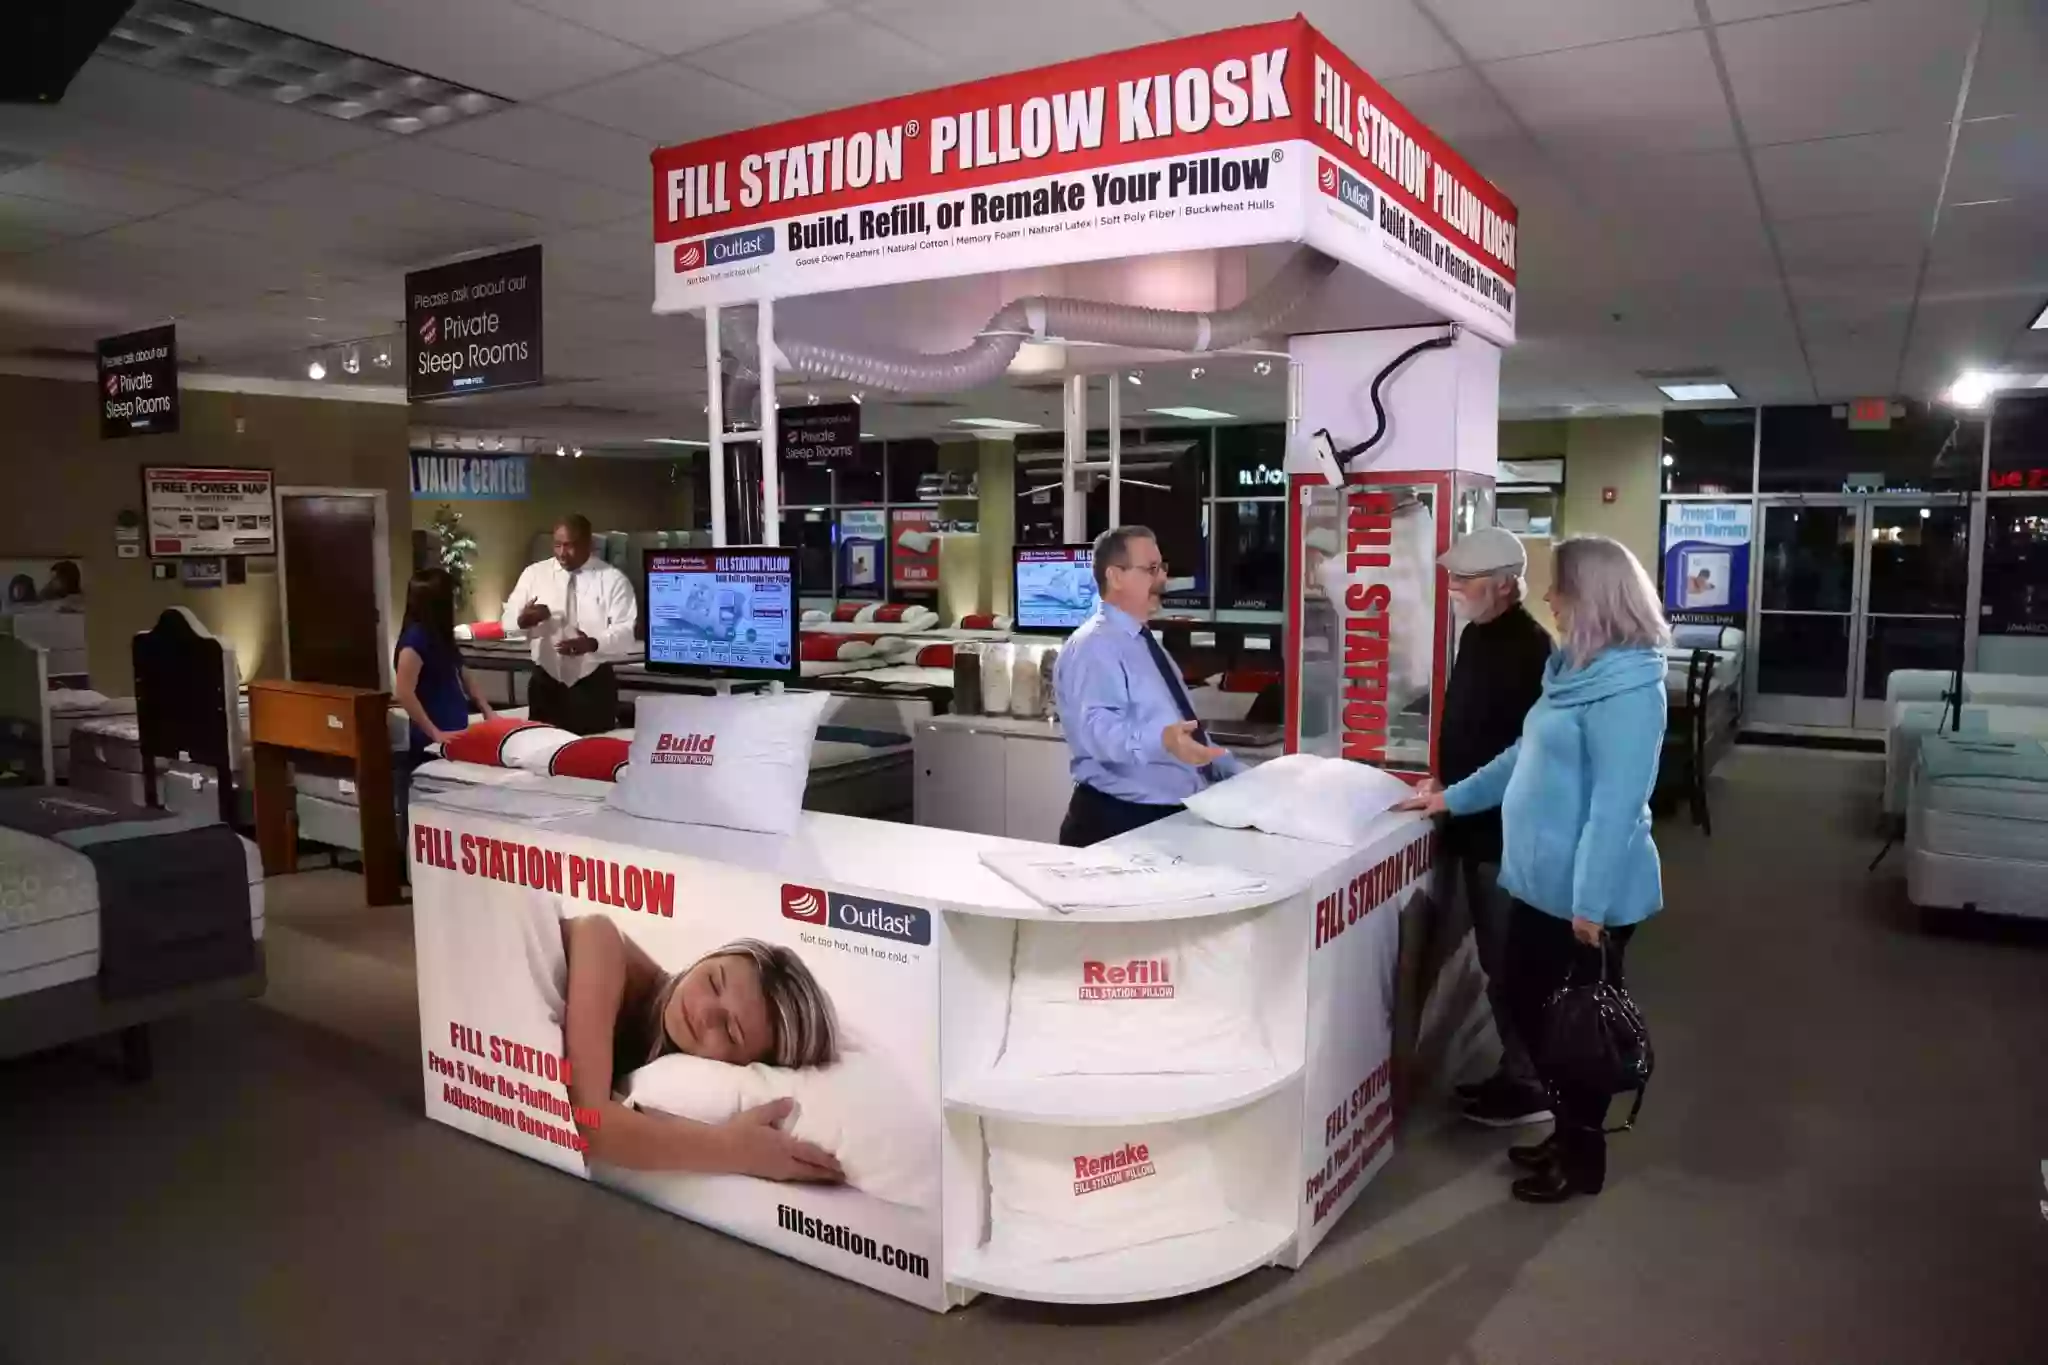 Fill Station Pillow Kiosk - Naples Mattress Miromar Outlets